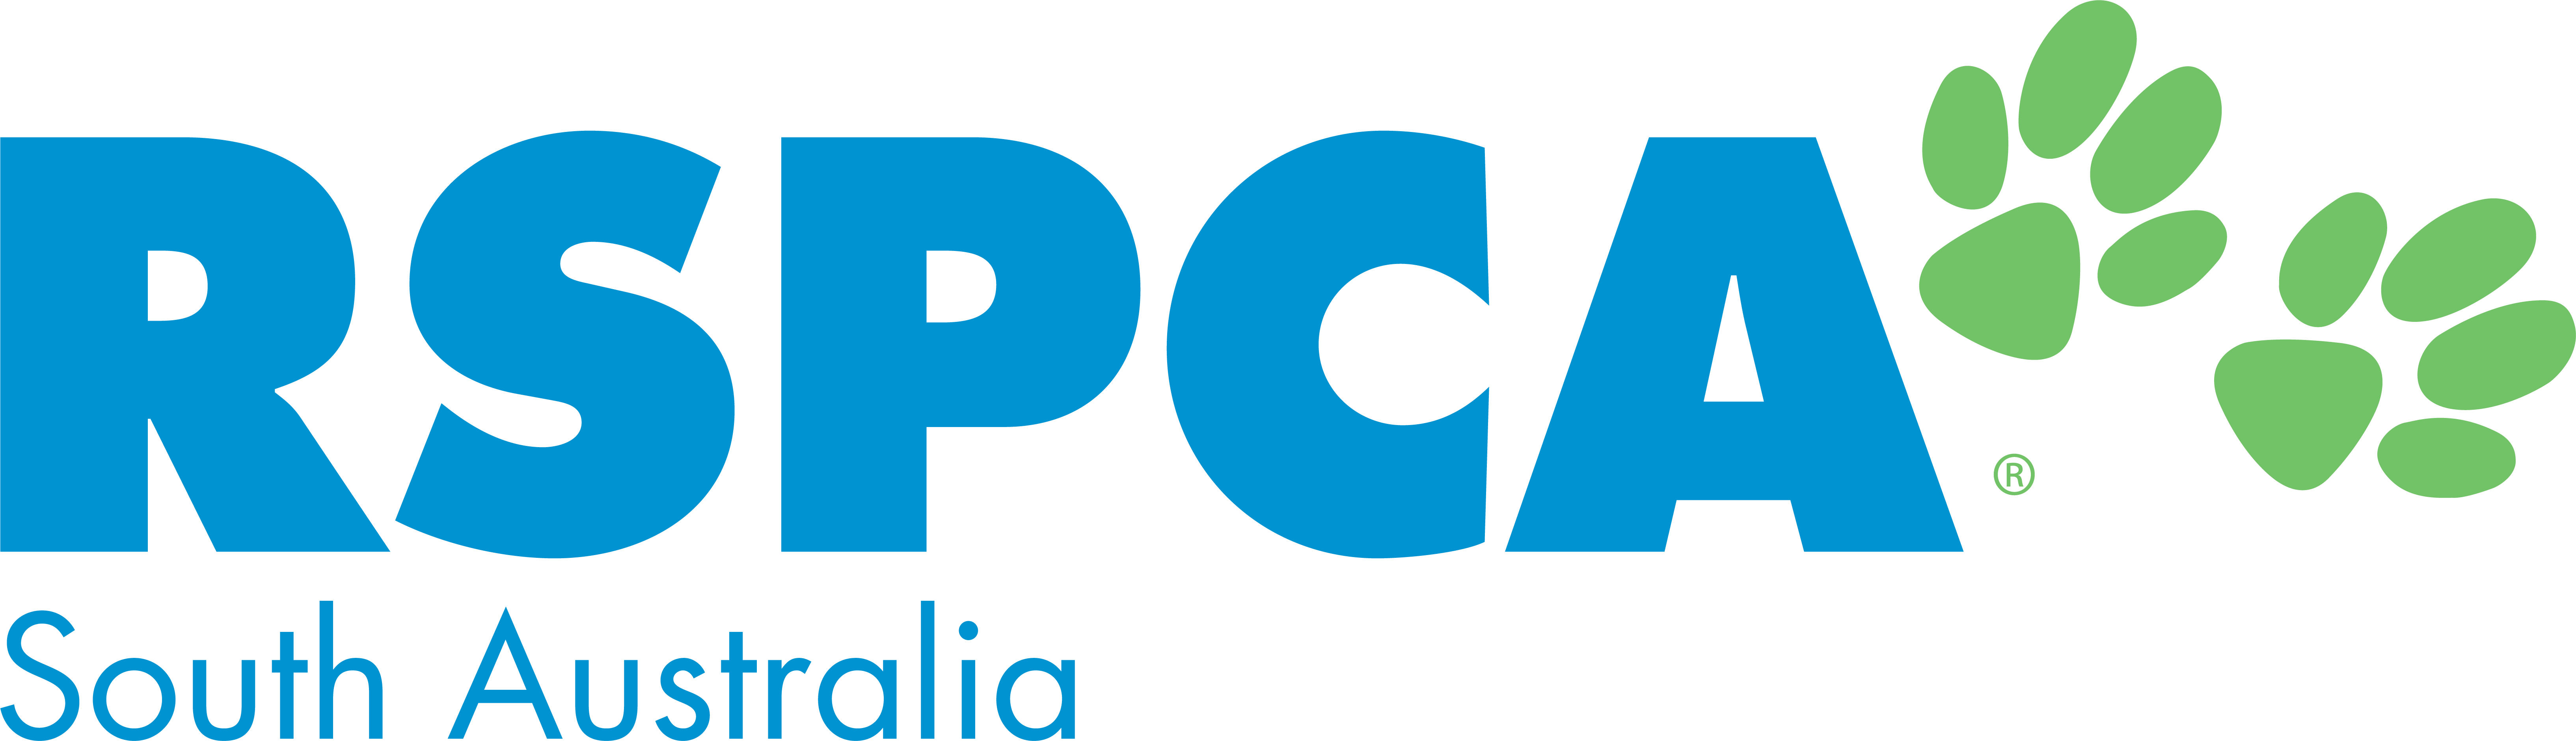 RSPCASA Logo colour PMSC